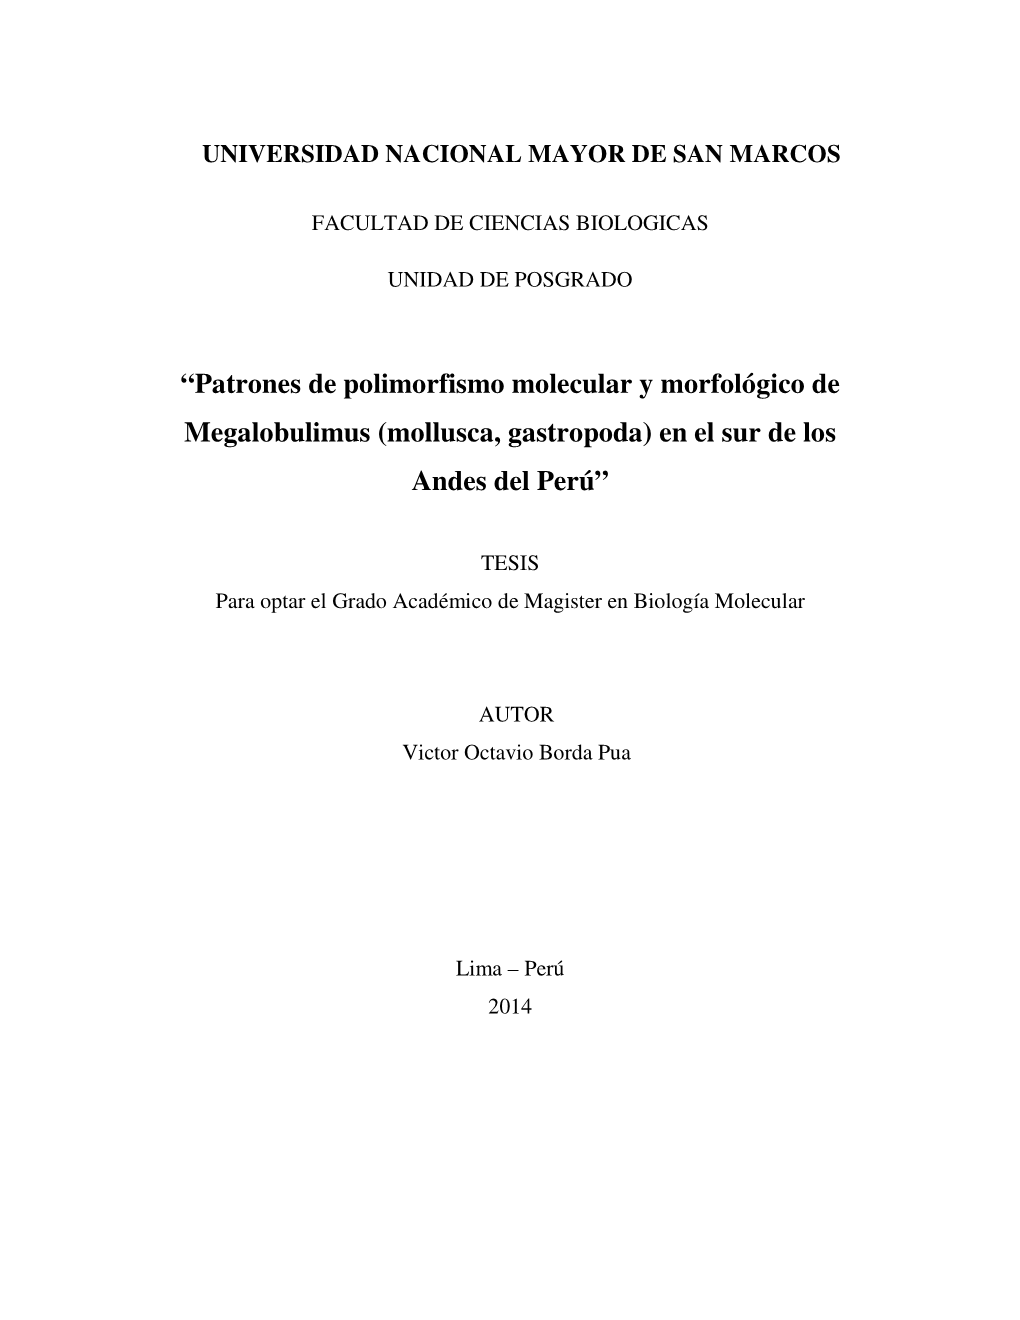 Patrones De Polimorfismo Molecular Y Morfológico De Megalobulimus (Mollusca, Gastropoda) En El Sur De Los Andes Del Perú”